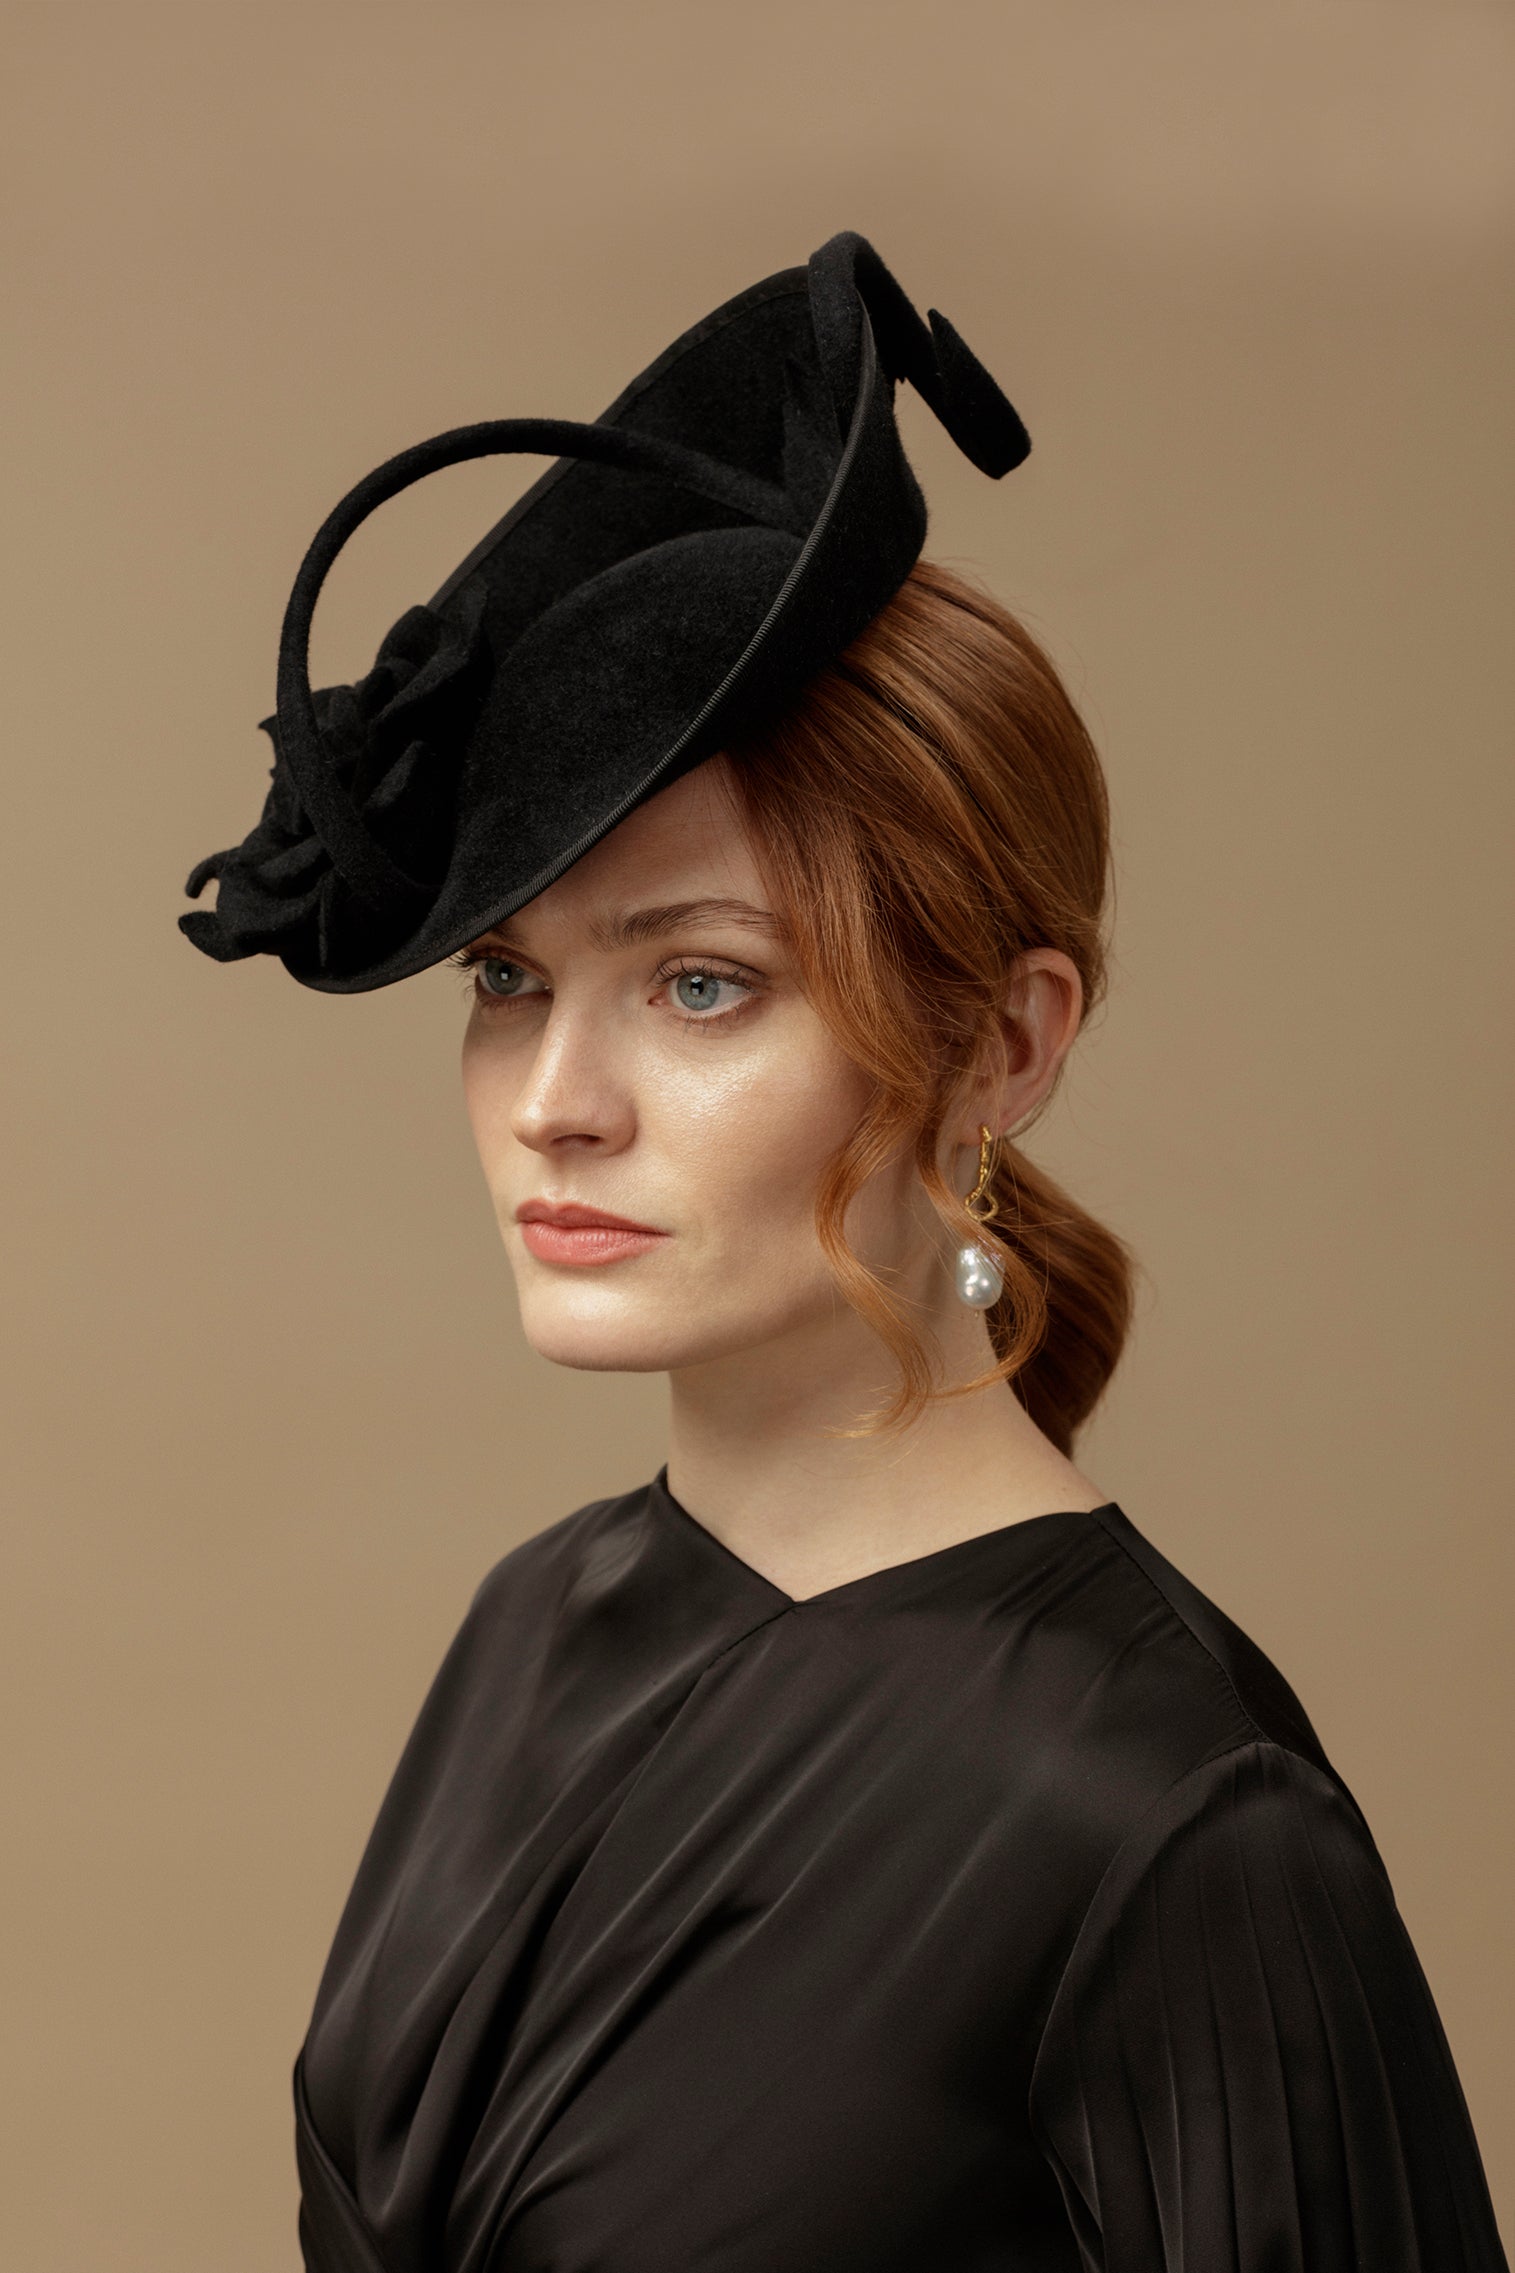 Black Belgravia Rose Hat - Women’s Hats - Lock & Co. Hatters London UK